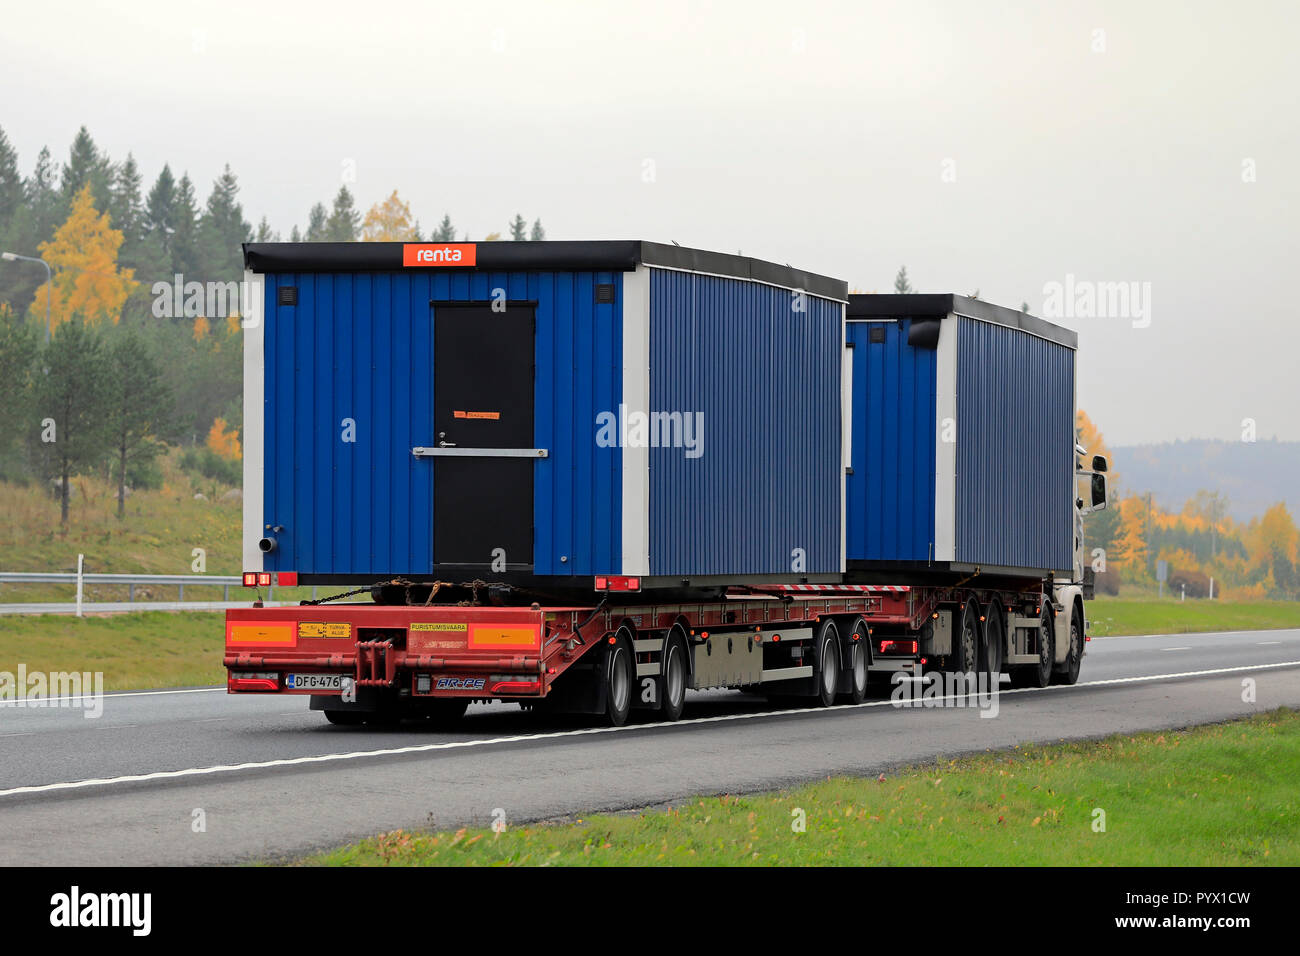 Salo, Finnland - 12. Oktober 2018: Zwei tragbare Kabinen auf LKW-Anhänger an der Autobahn mit Lastwagen transportiert an einem nebligen Tag im Herbst. Stockfoto